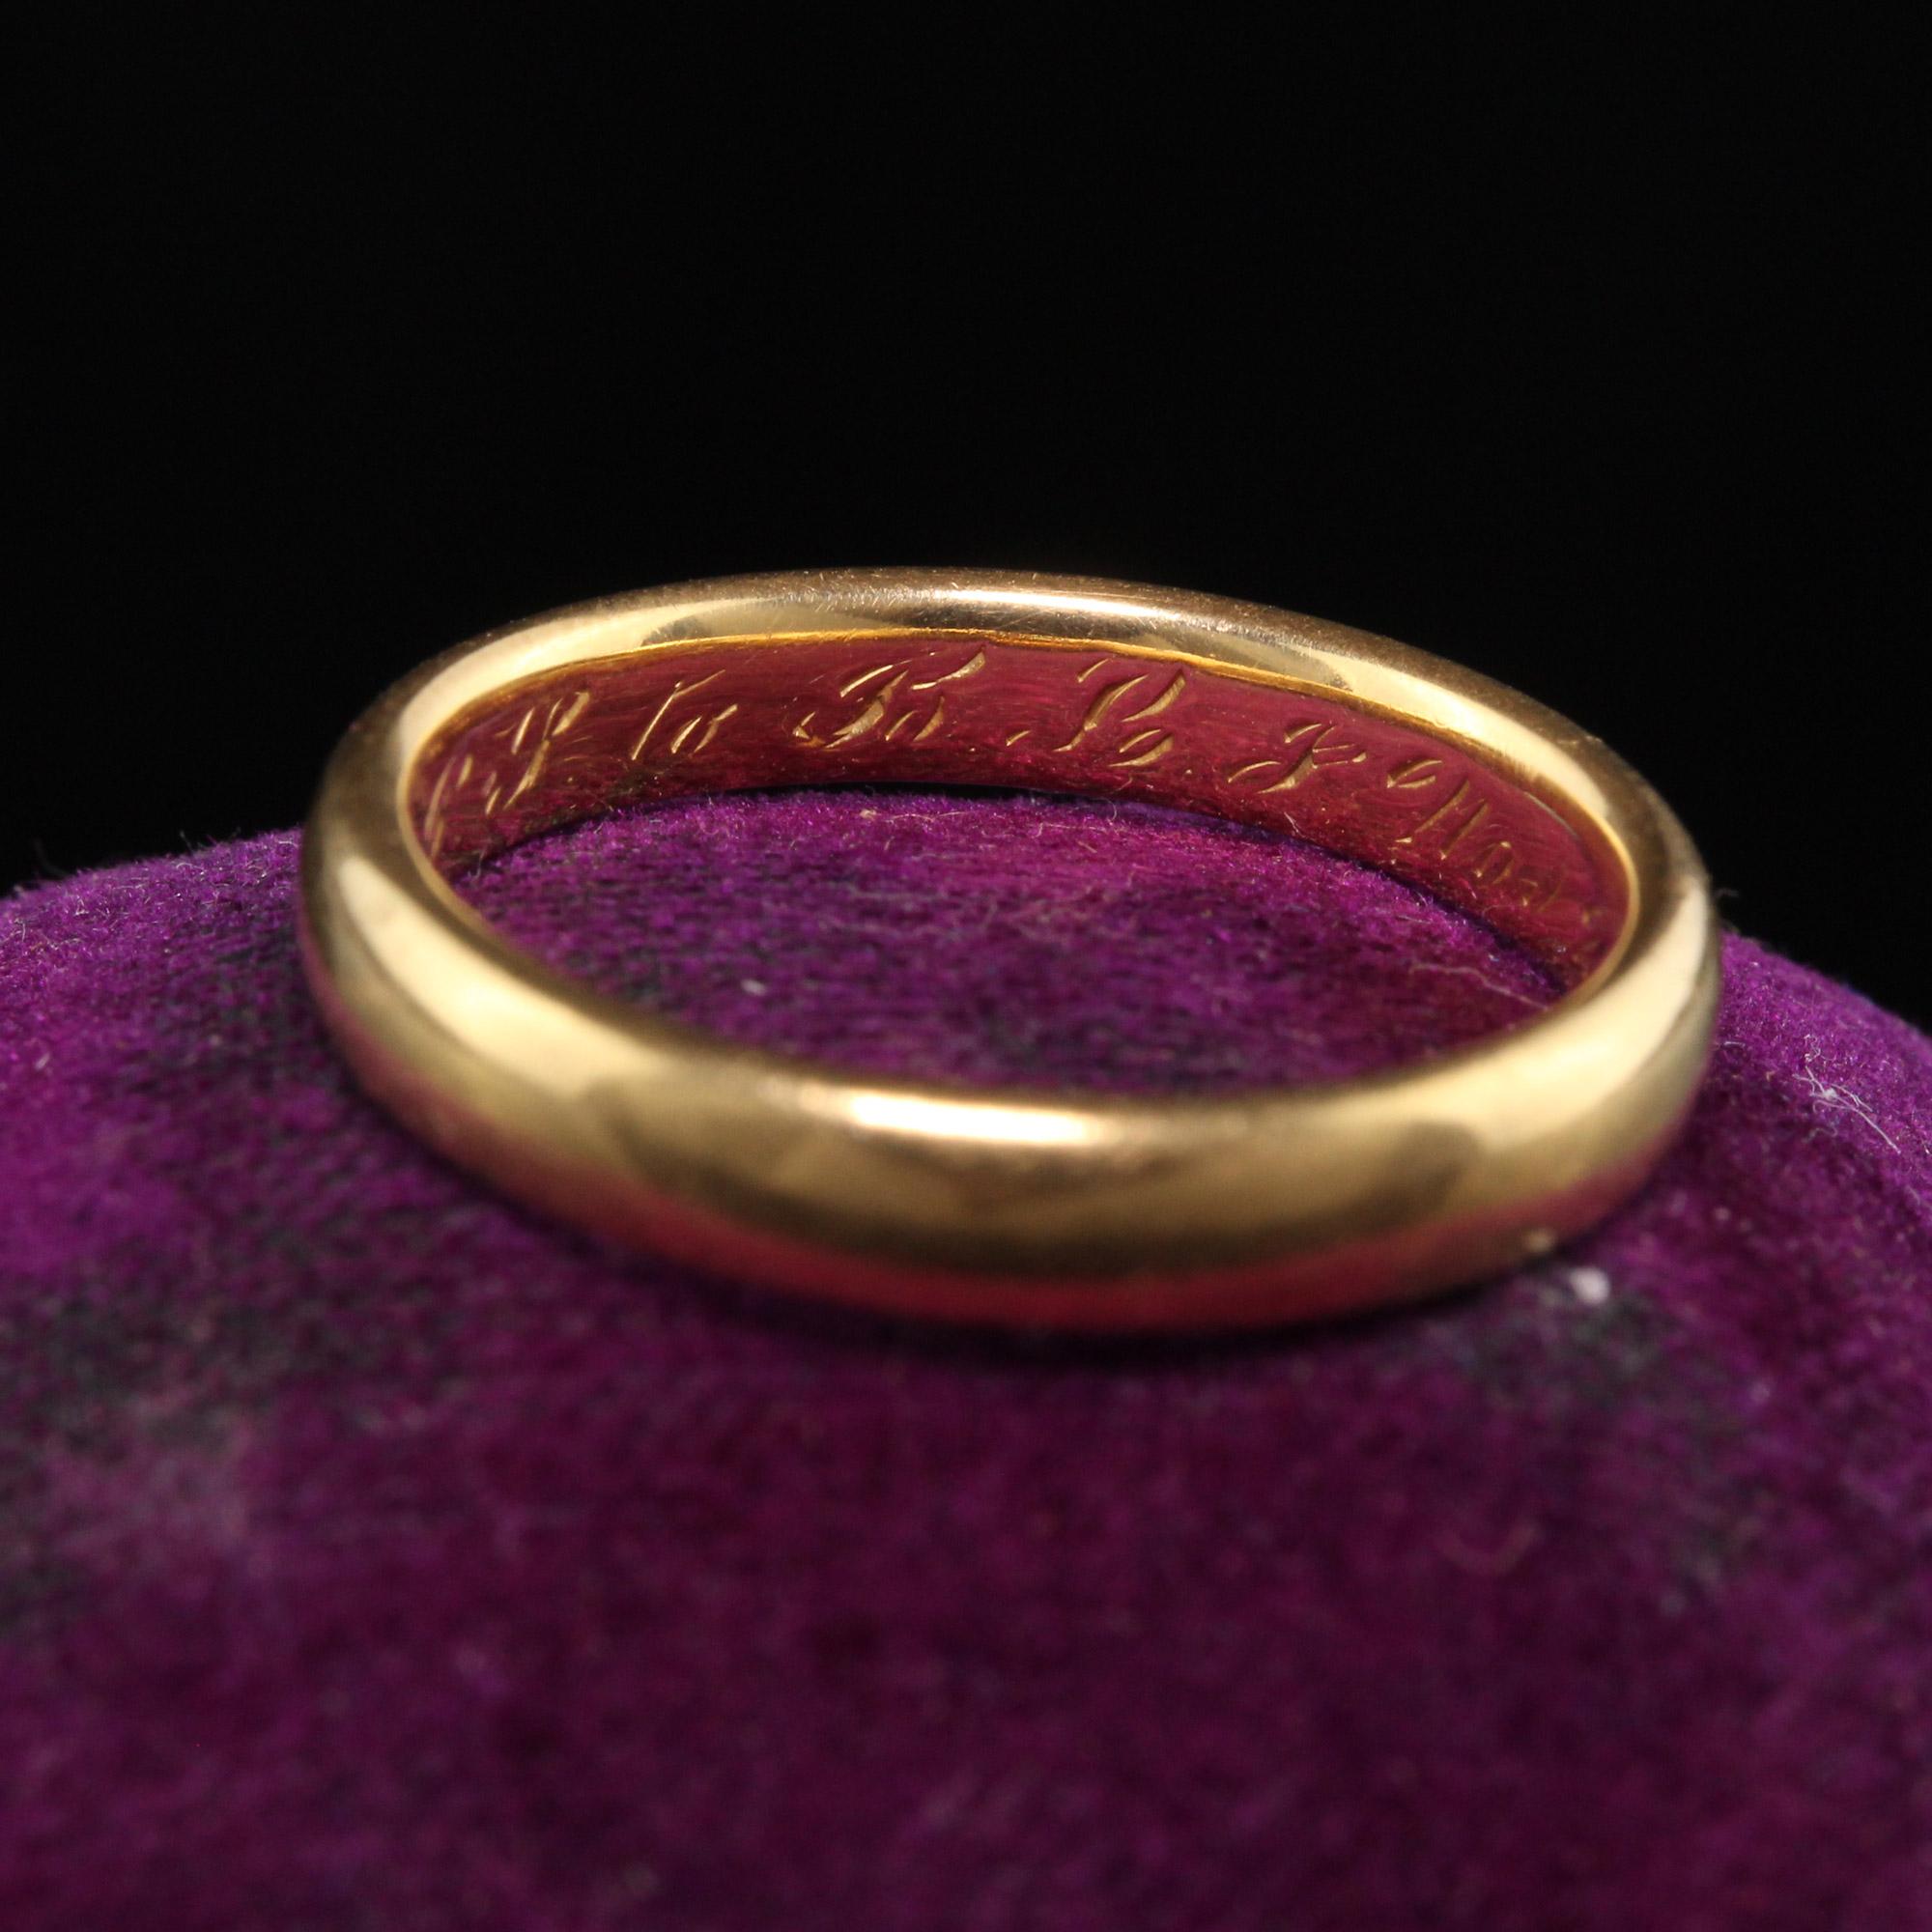 Schöne antike Art Deco 18K Gelbgold eingraviert Hochzeit Band - Größe 6 1/2. Dieser klassische Ehering ist im Inneren des Rings eingraviert P. J. zu B. L. F. Nov 29, 1916